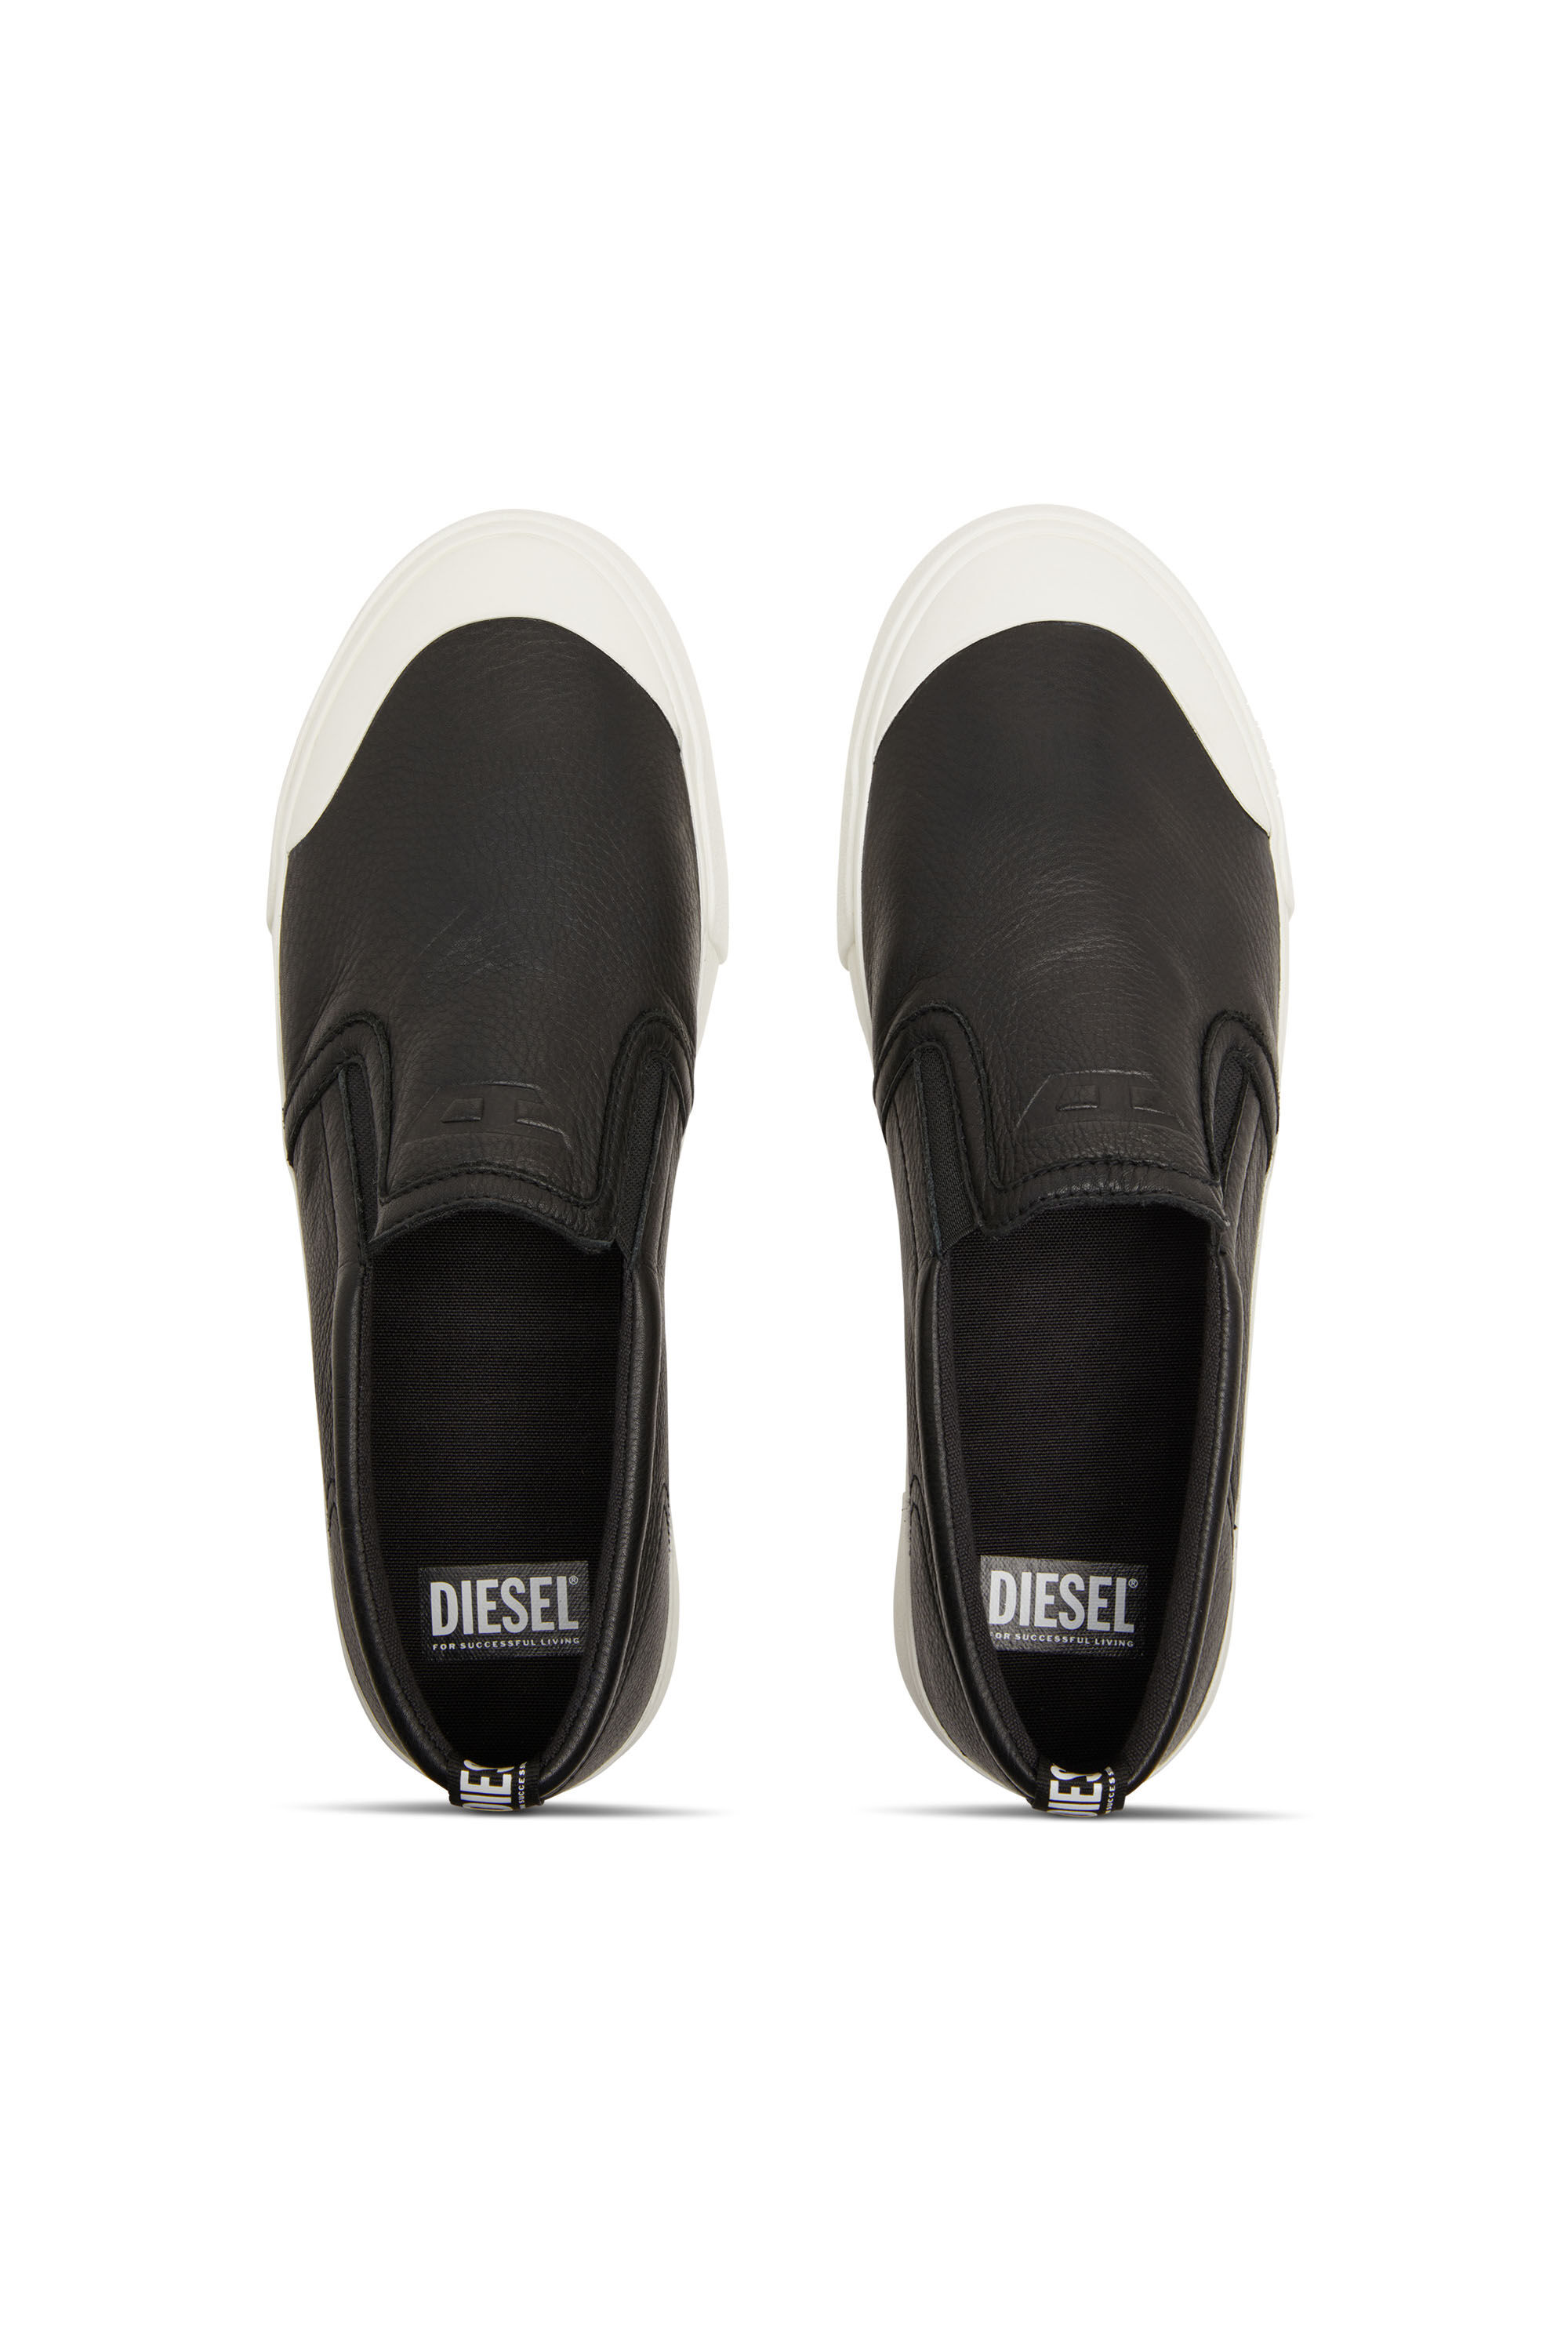 Diesel - S-ATHOS SLIP ON, Herren S-Athos-Verschlusslose Sneakers aus einfarbigem Leder in Schwarz - Image 4